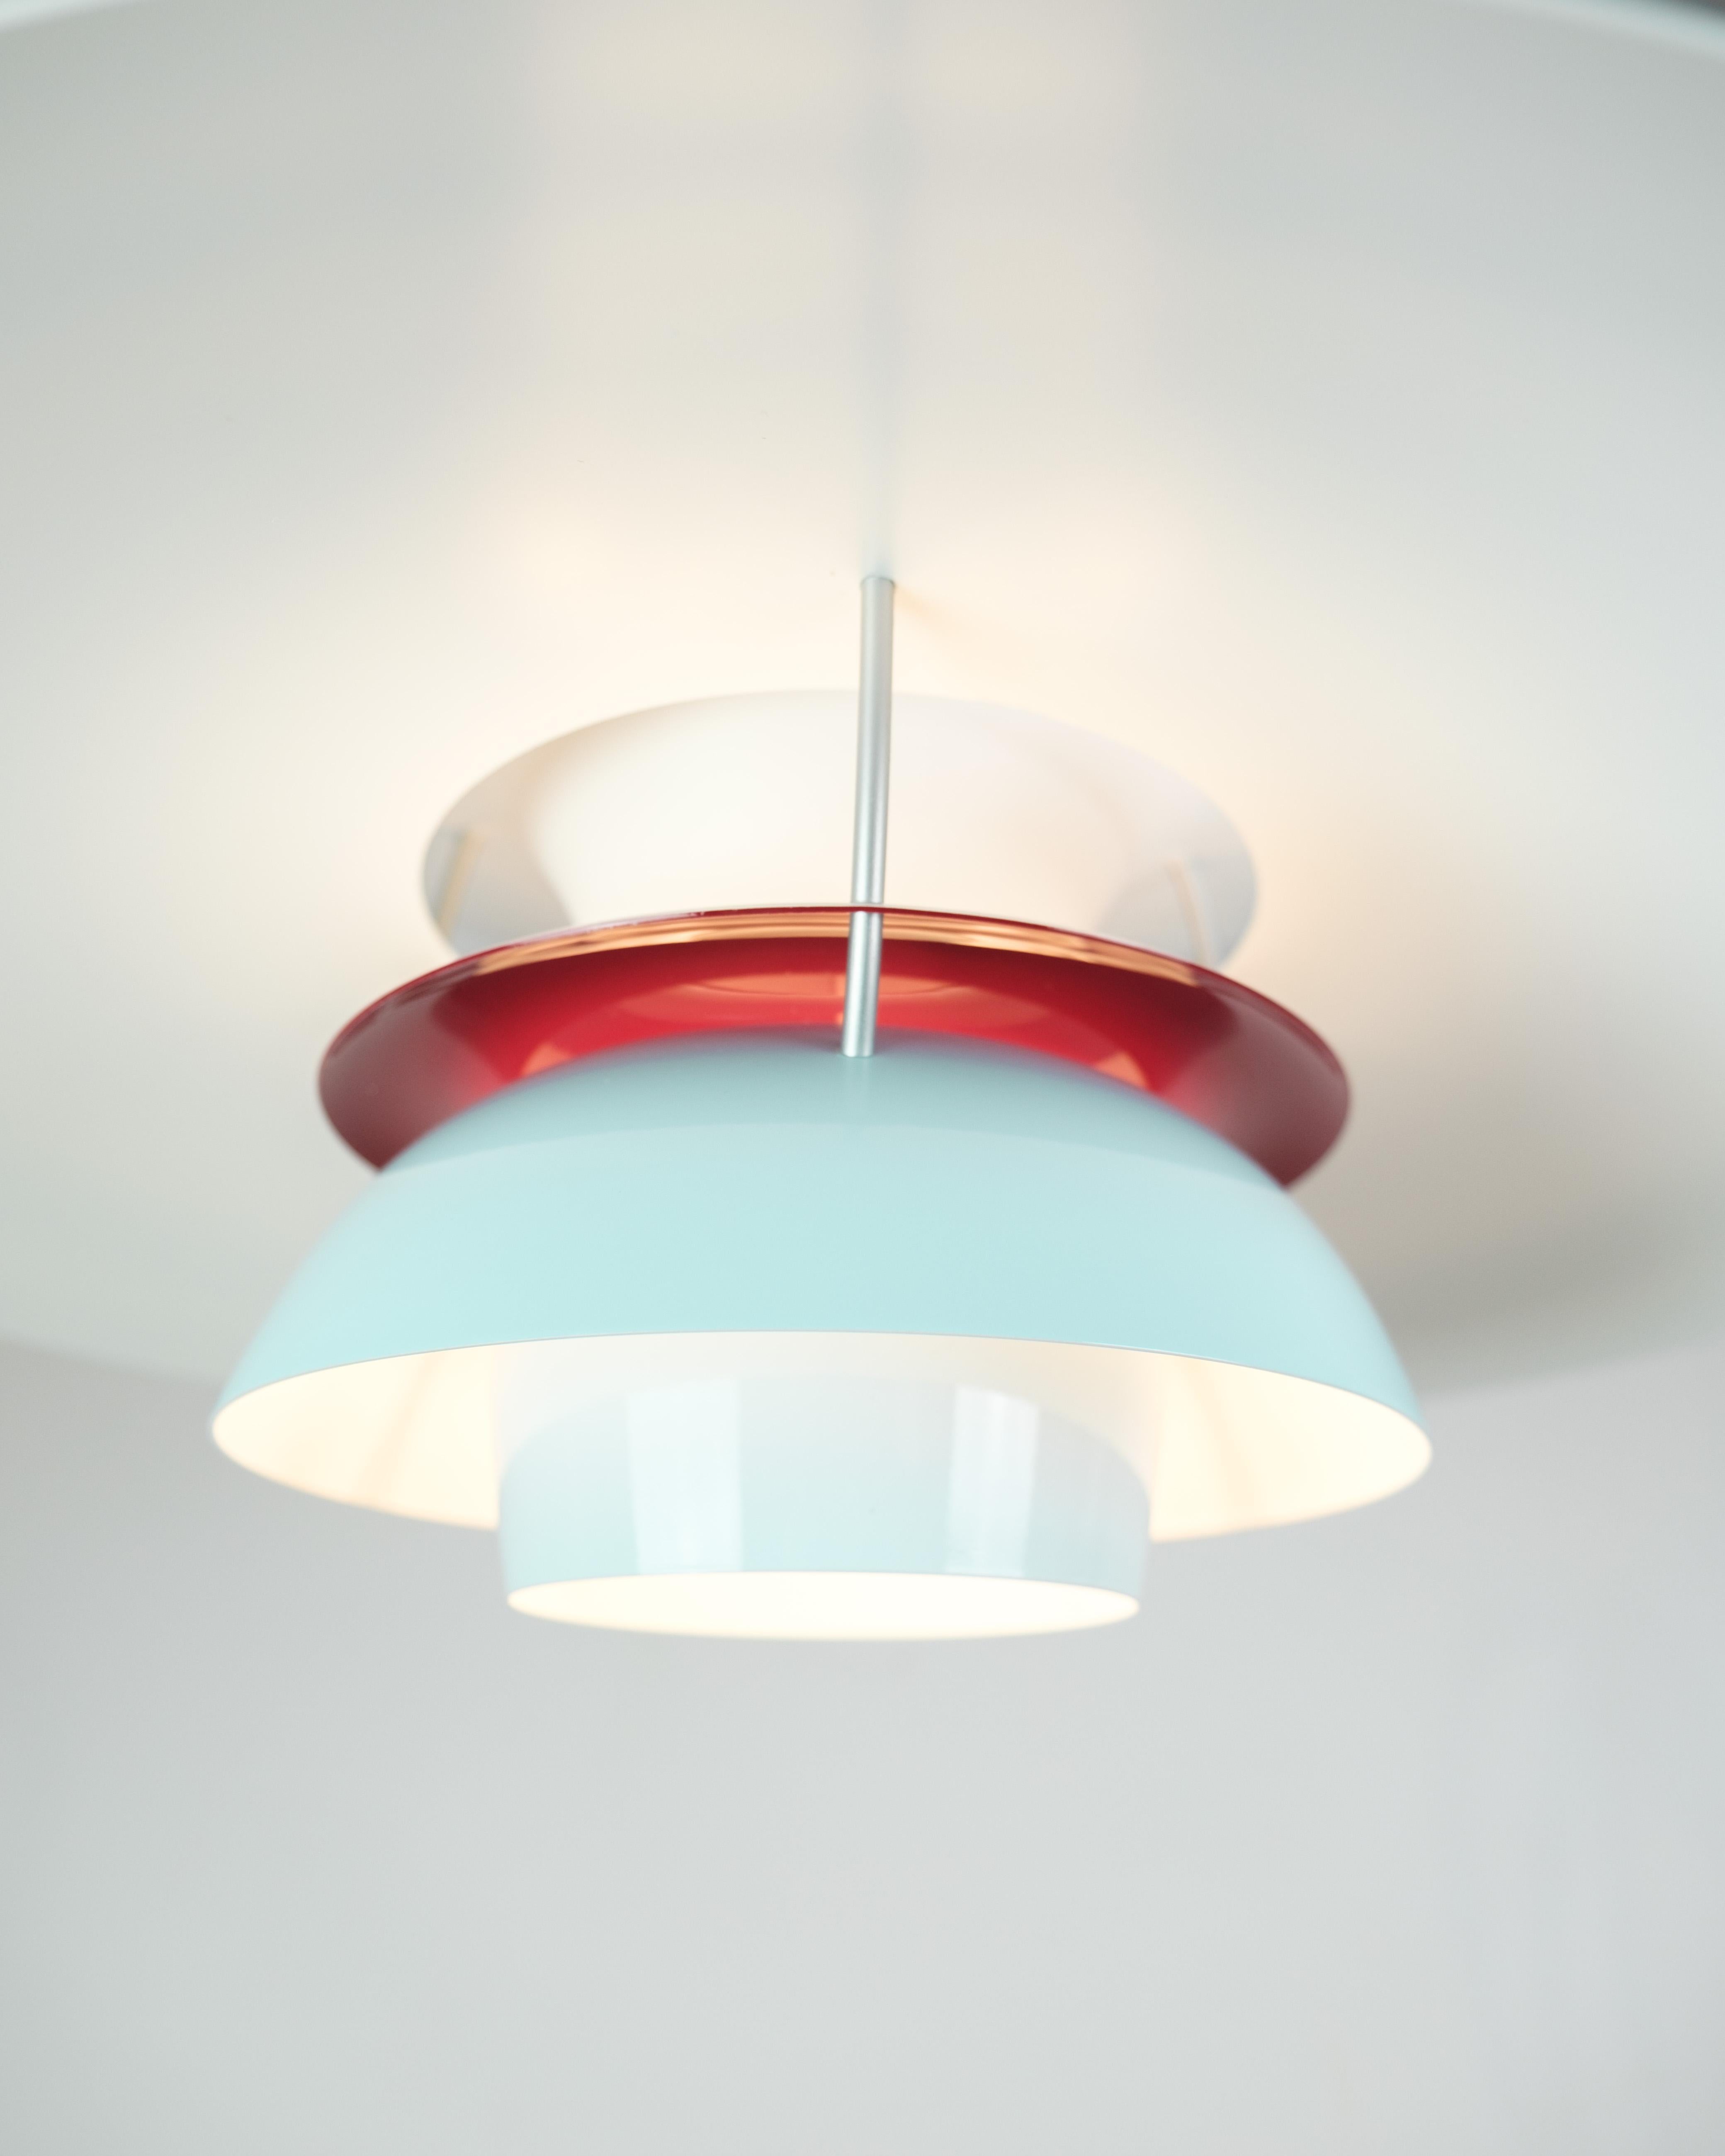 
Le plafonnier PH5, conçu par Poul Henningsen et fabriqué par Louis Poulsen, est une pièce emblématique du design d'éclairage connue pour sa forme innovante et sa fonctionnalité exceptionnelle. Dans cette édition spéciale, la lampe se présente dans